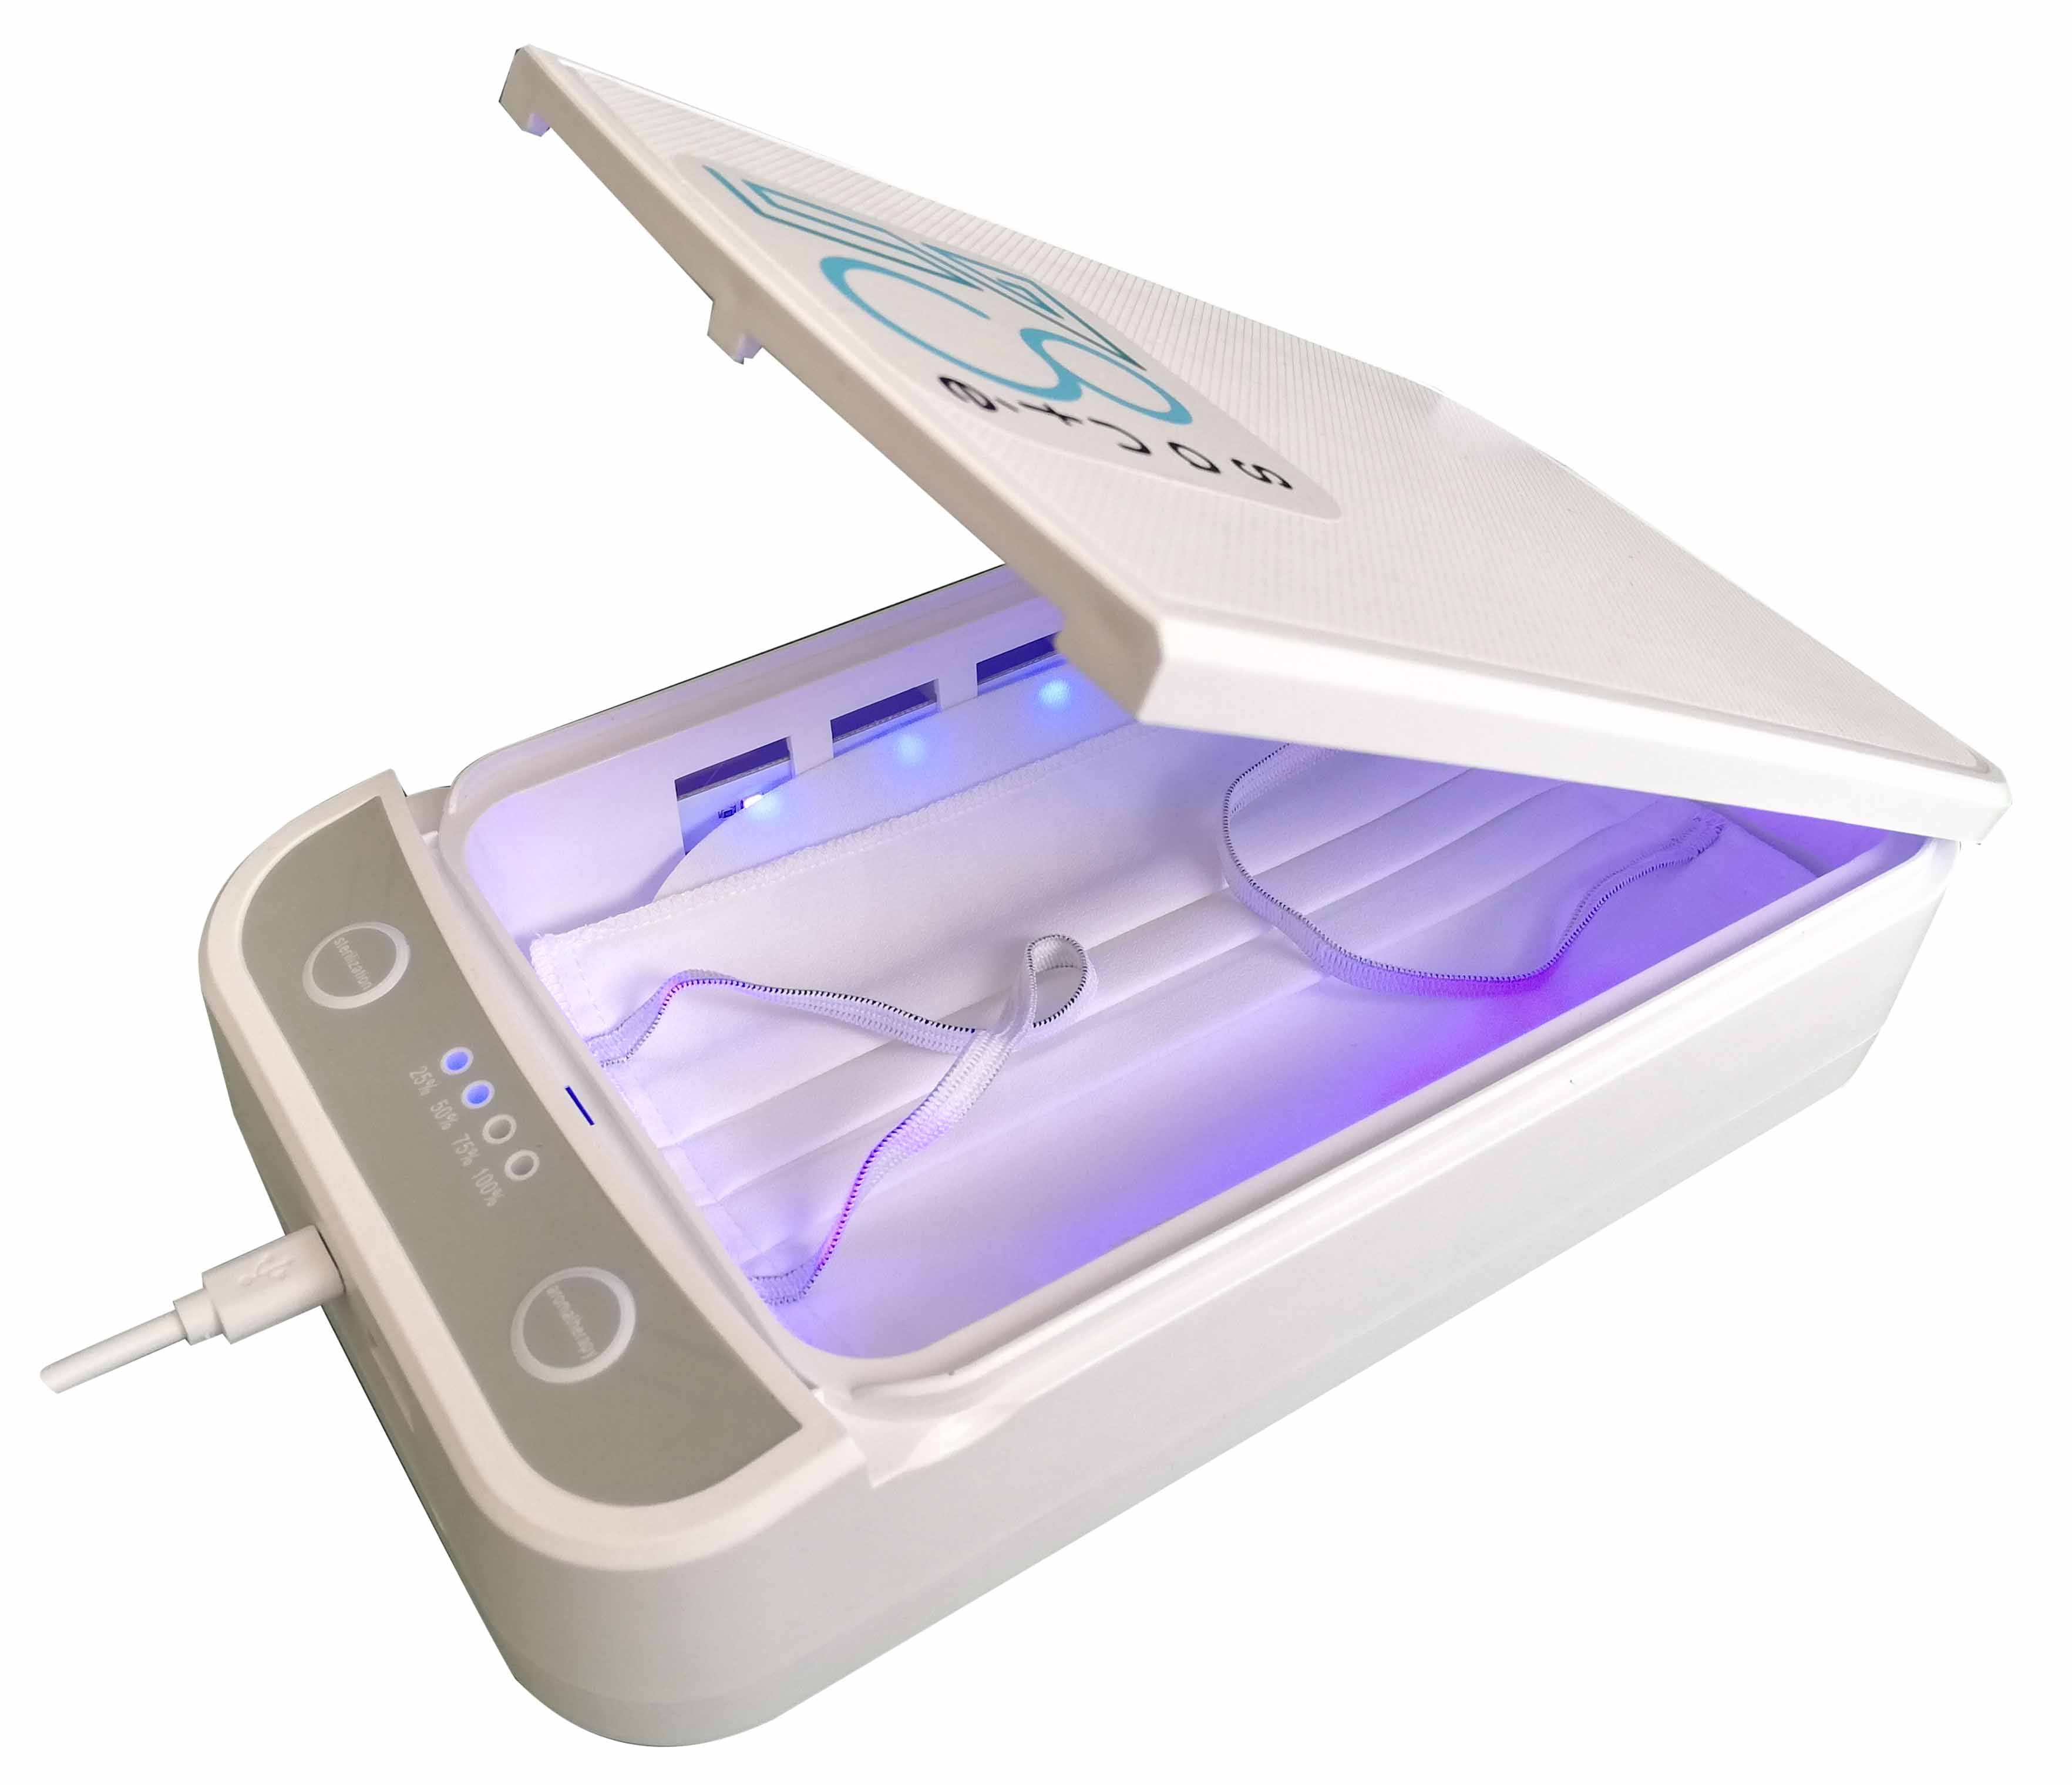 Stérilisateur UV, Sac stérilisateur UV, Boîte de stérilisation  multifonctionnelle, pour téléphone portable, outil de nettoyage cosmétique